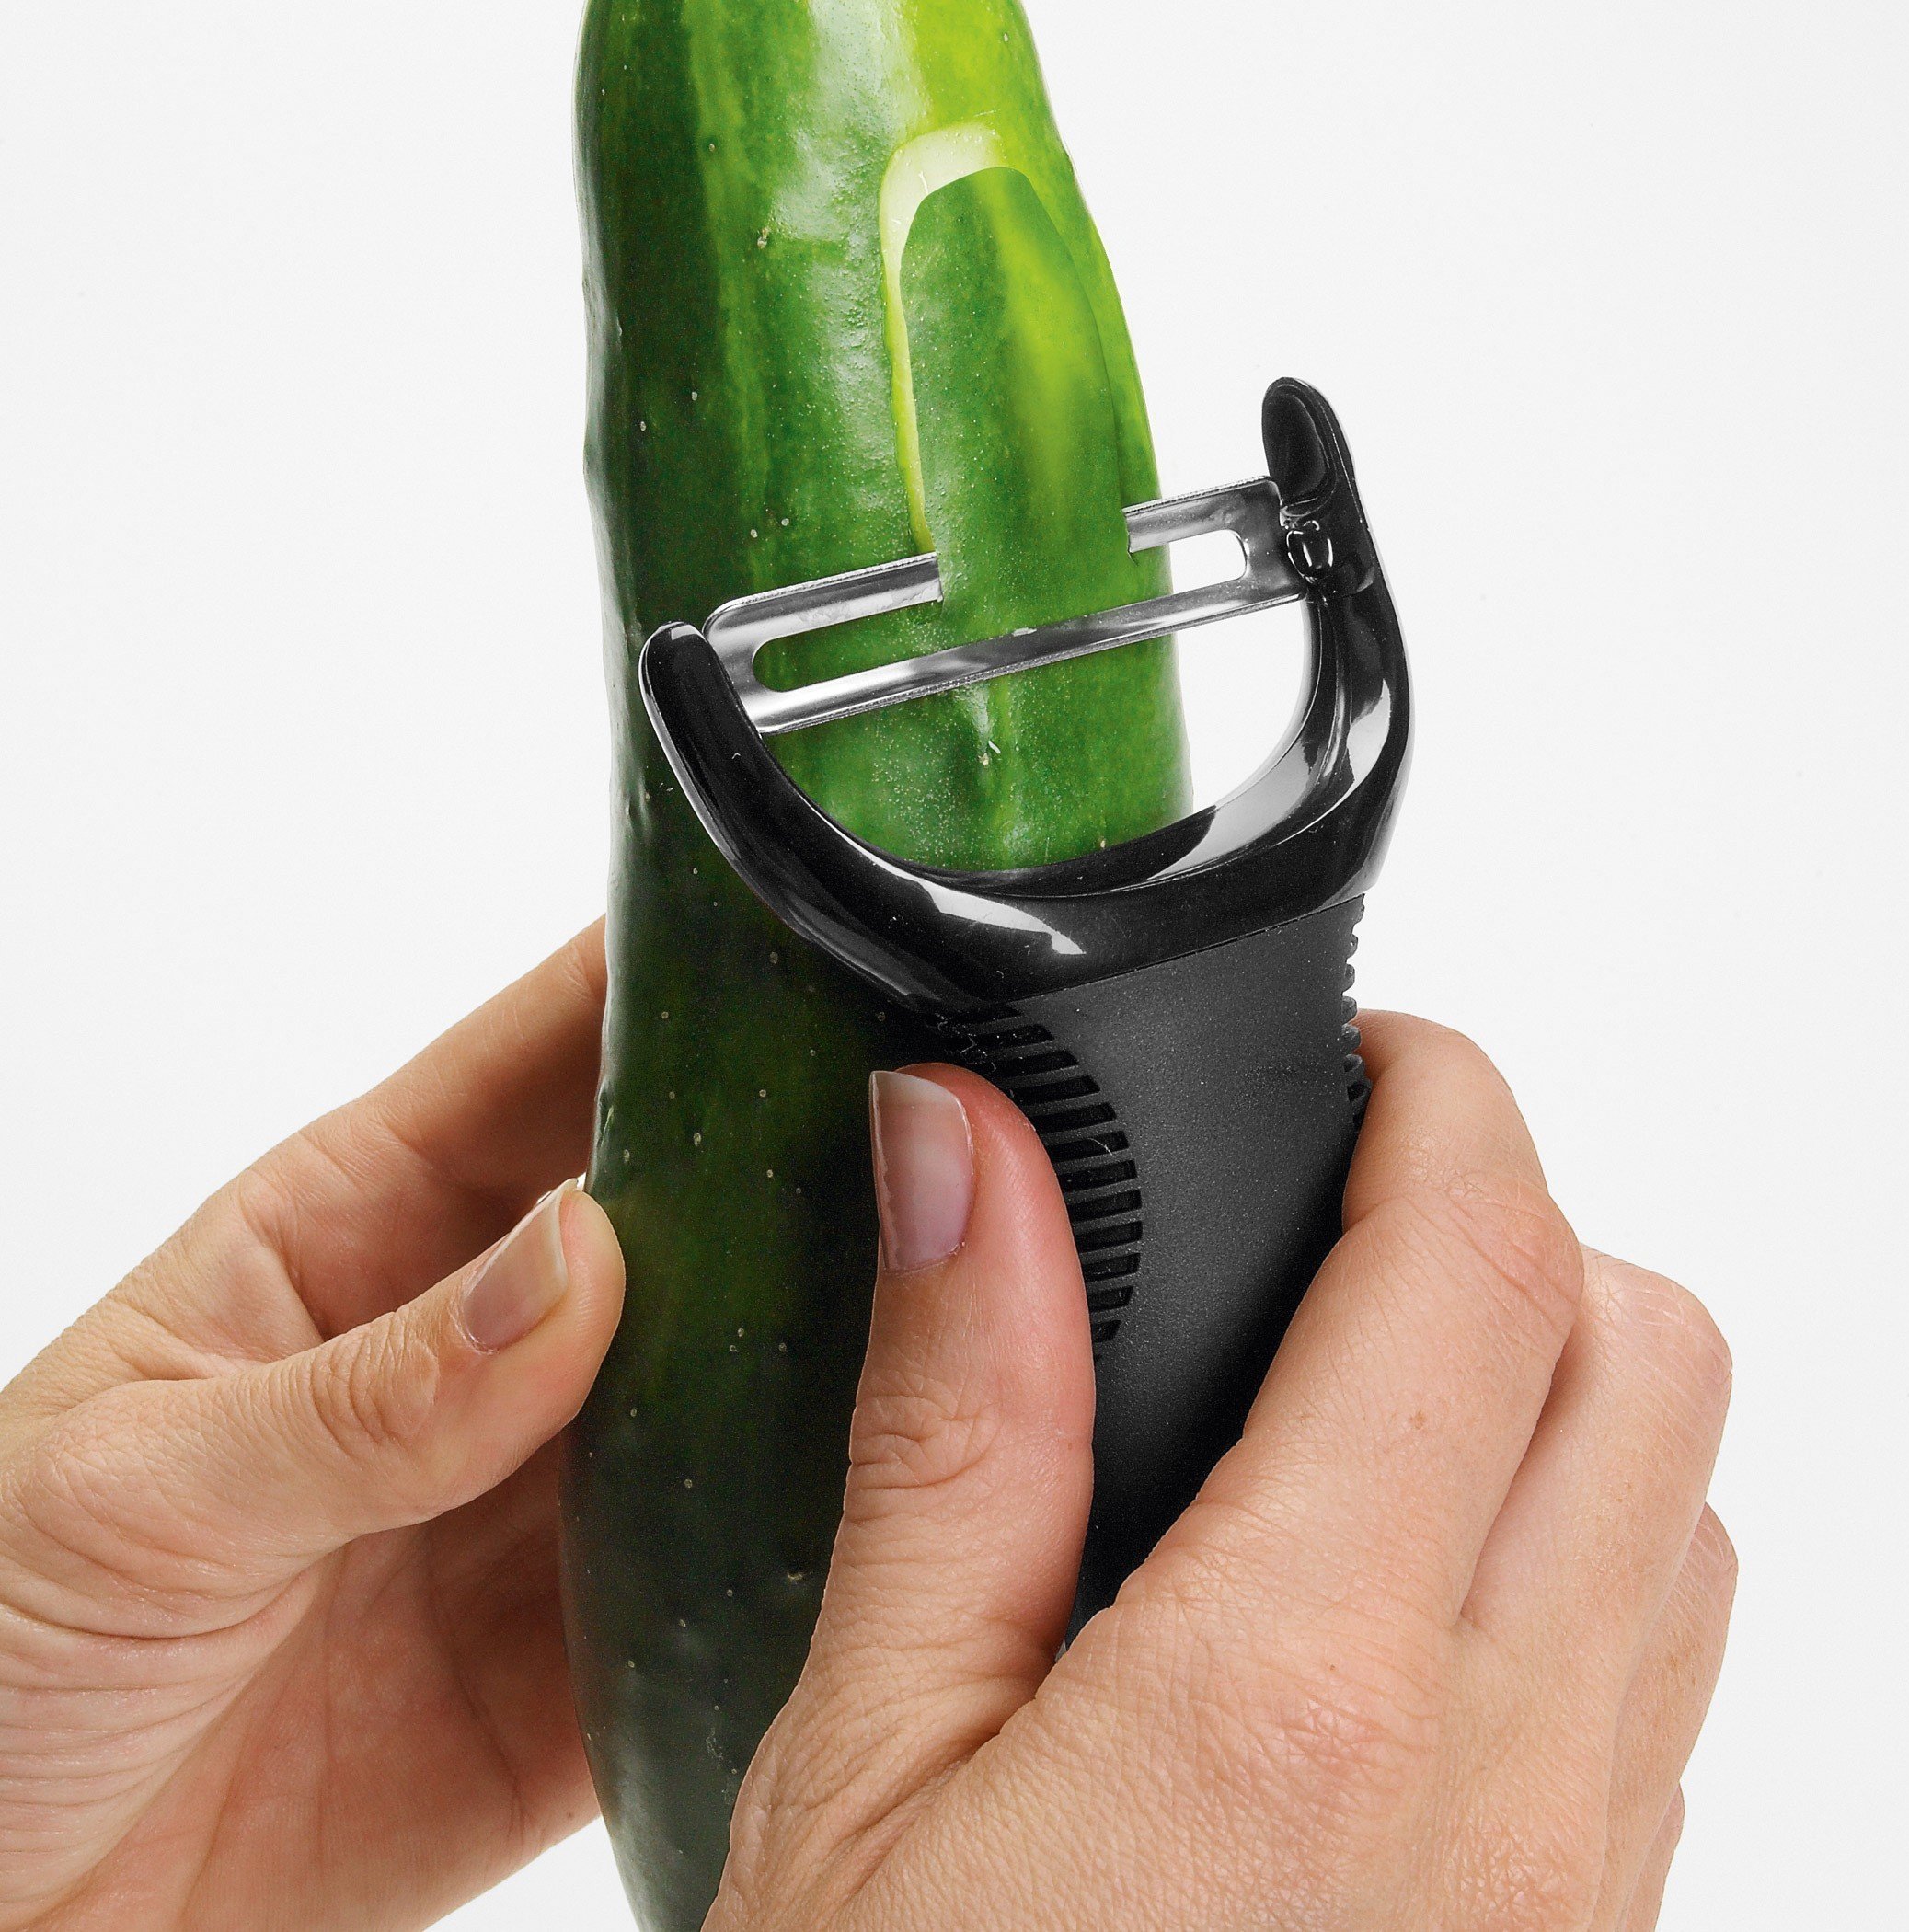 Y Good Grips Vegetable peeler small - Oxo 11258900MLNYK